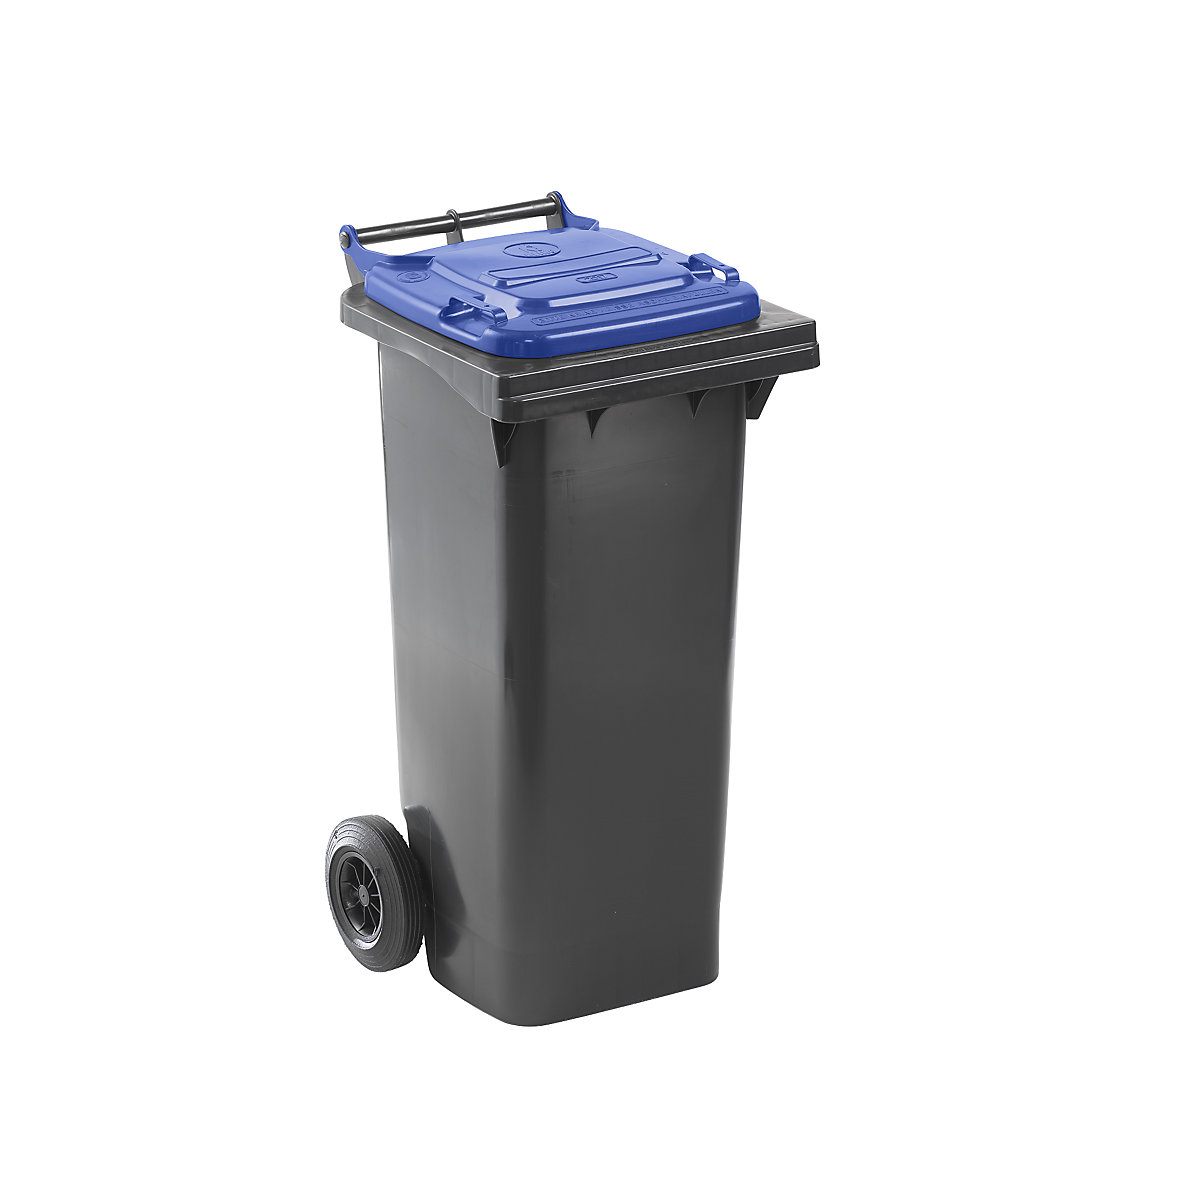 Waste bin to DIN EN 840, capacity 80 l, WxHxD 448 x 975 x 530 mm, charcoal, blue lid-7